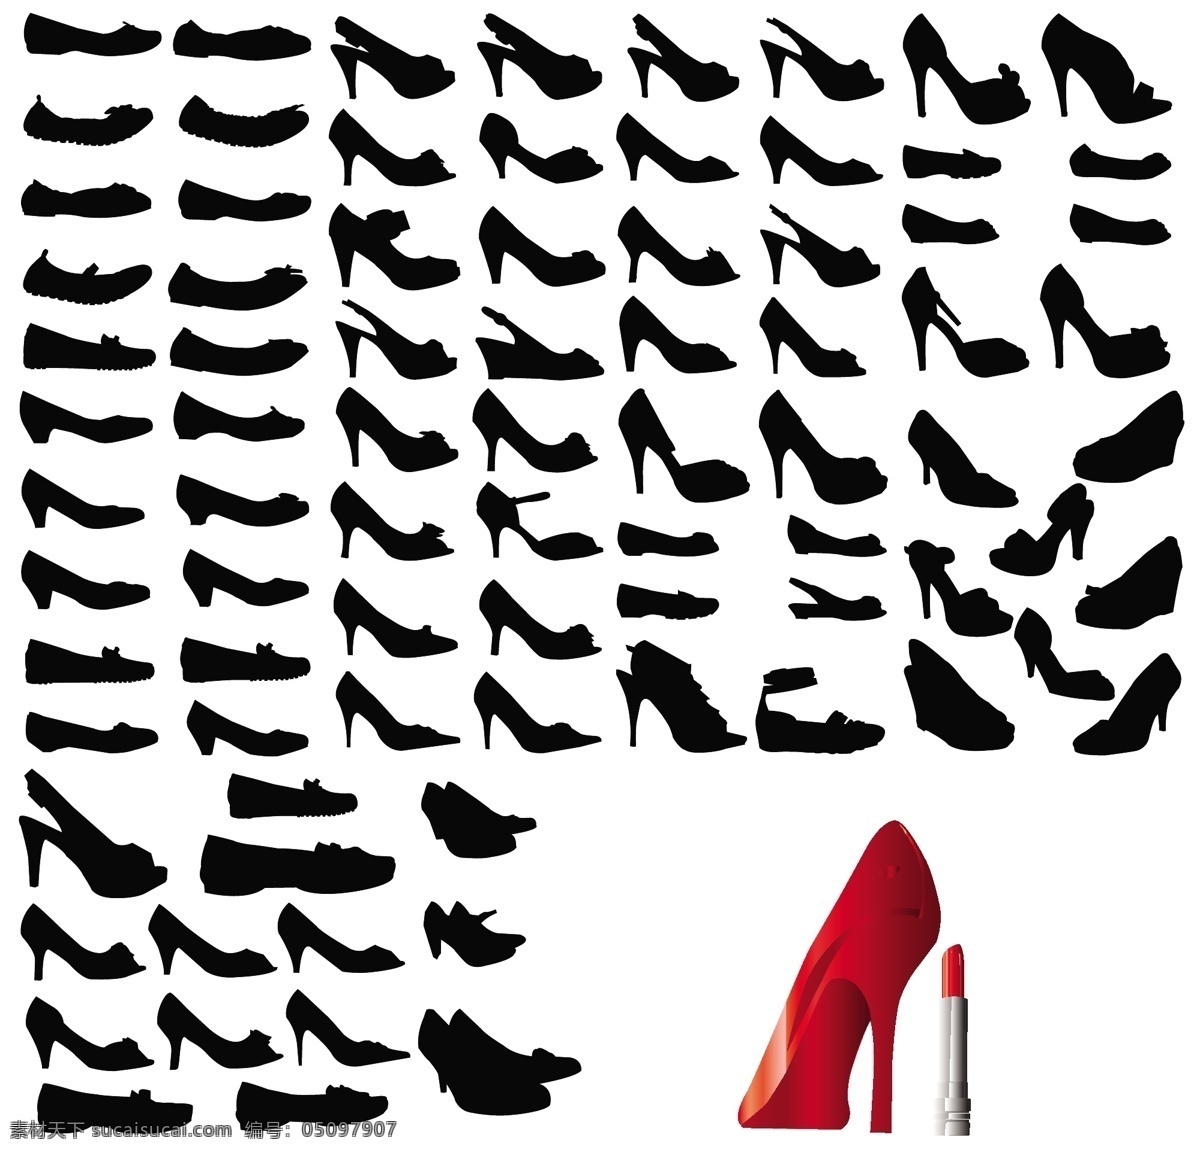 女性 高跟鞋 矢量 剪影 口红 女人 腿 鞋 矢量图 日常生活